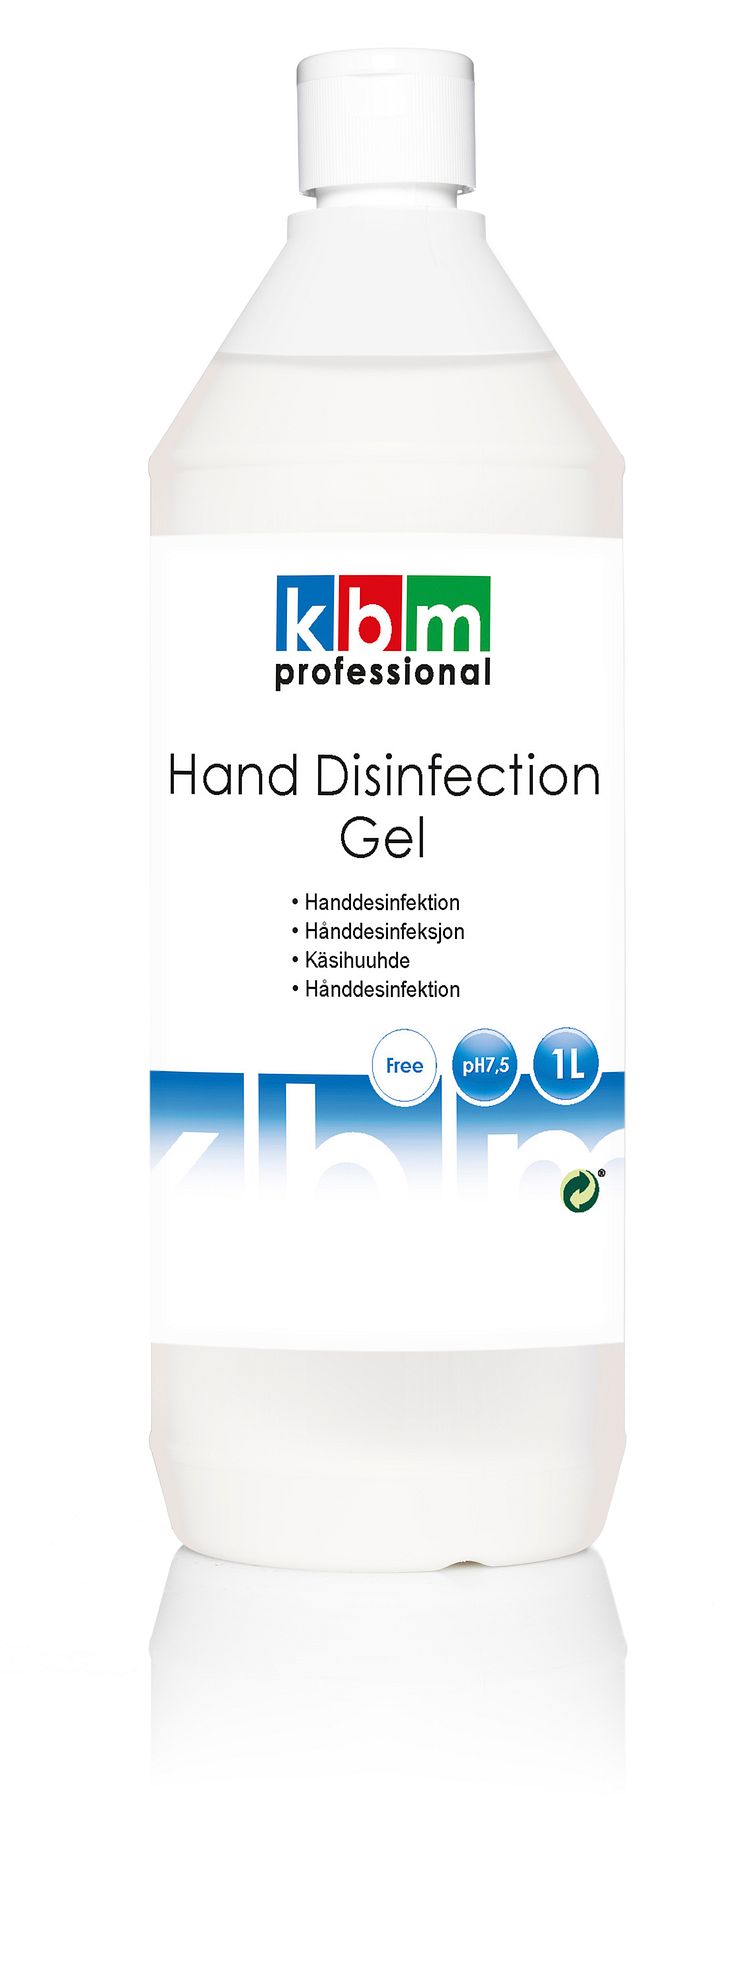 Handdesinfektion gel, 1 liter, KBM Professional